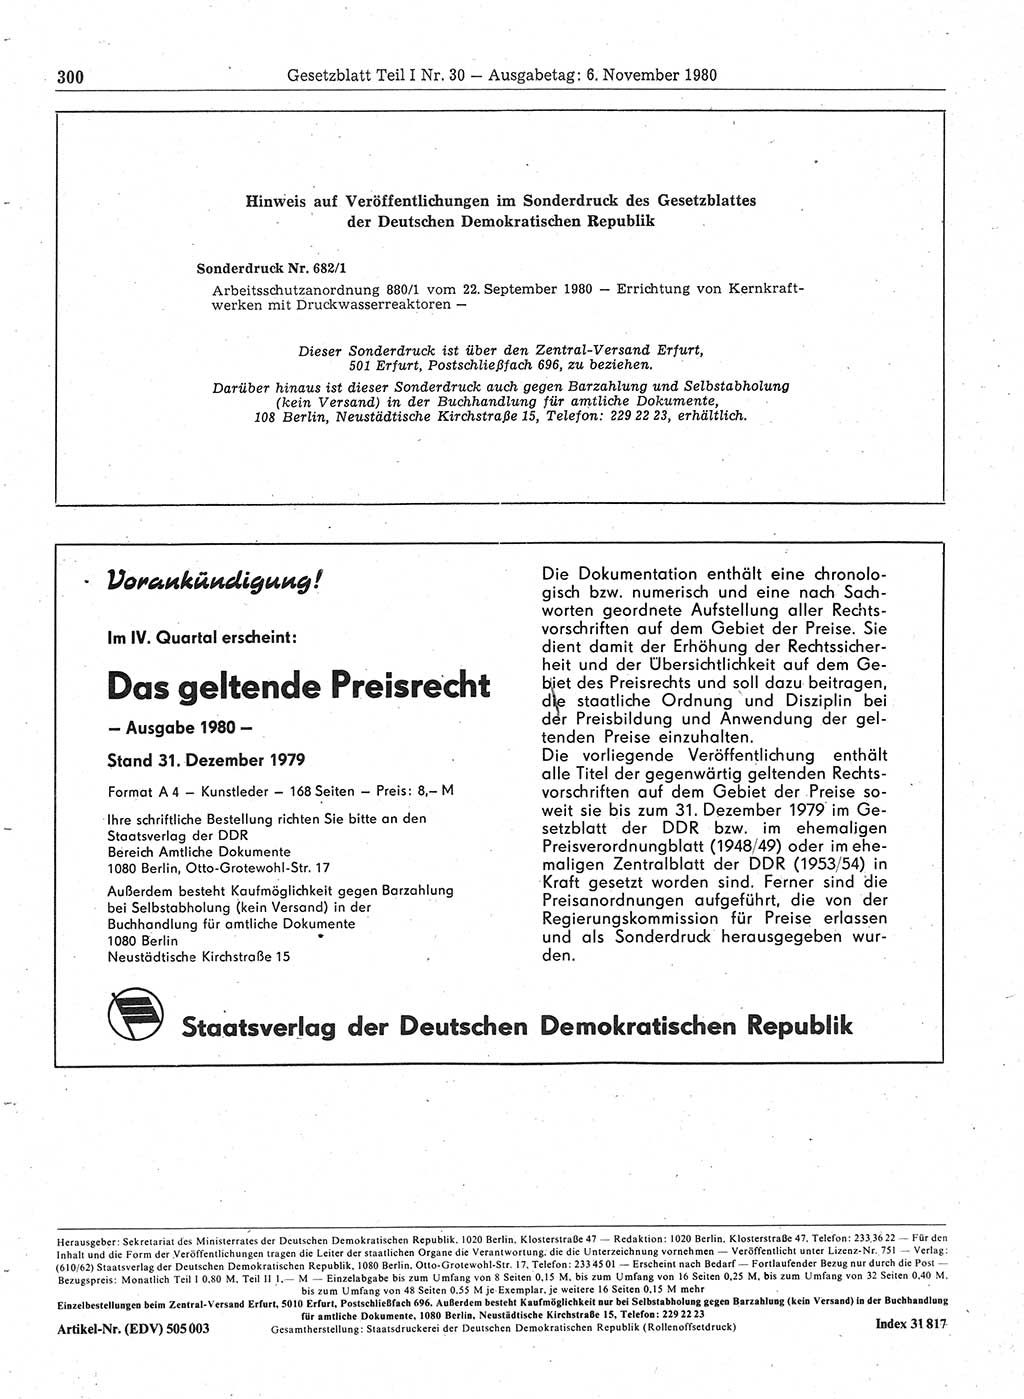 Gesetzblatt (GBl.) der Deutschen Demokratischen Republik (DDR) Teil Ⅰ 1980, Seite 300 (GBl. DDR Ⅰ 1980, S. 300)